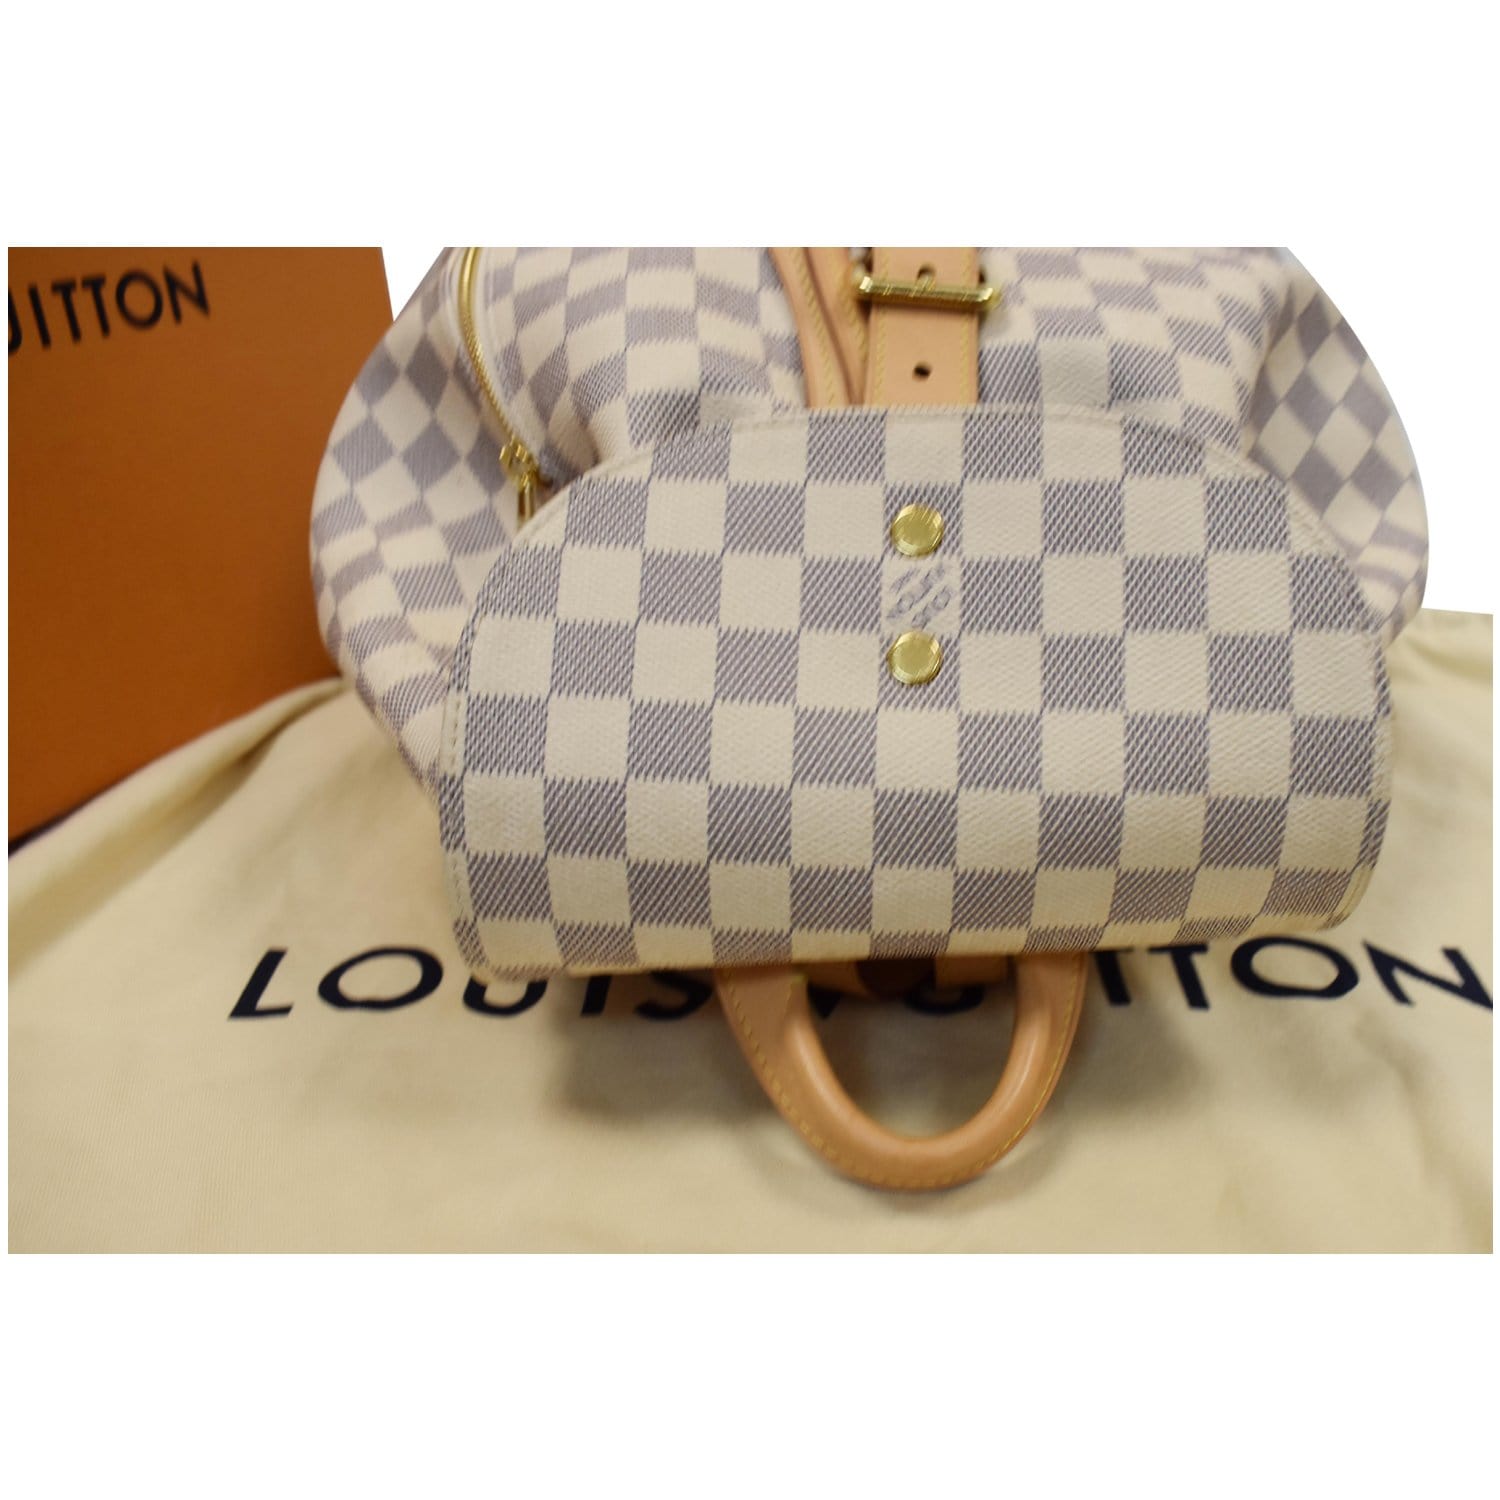 White Louis Vuitton Damier Azur Sperone BB Backpack – Designer Revival